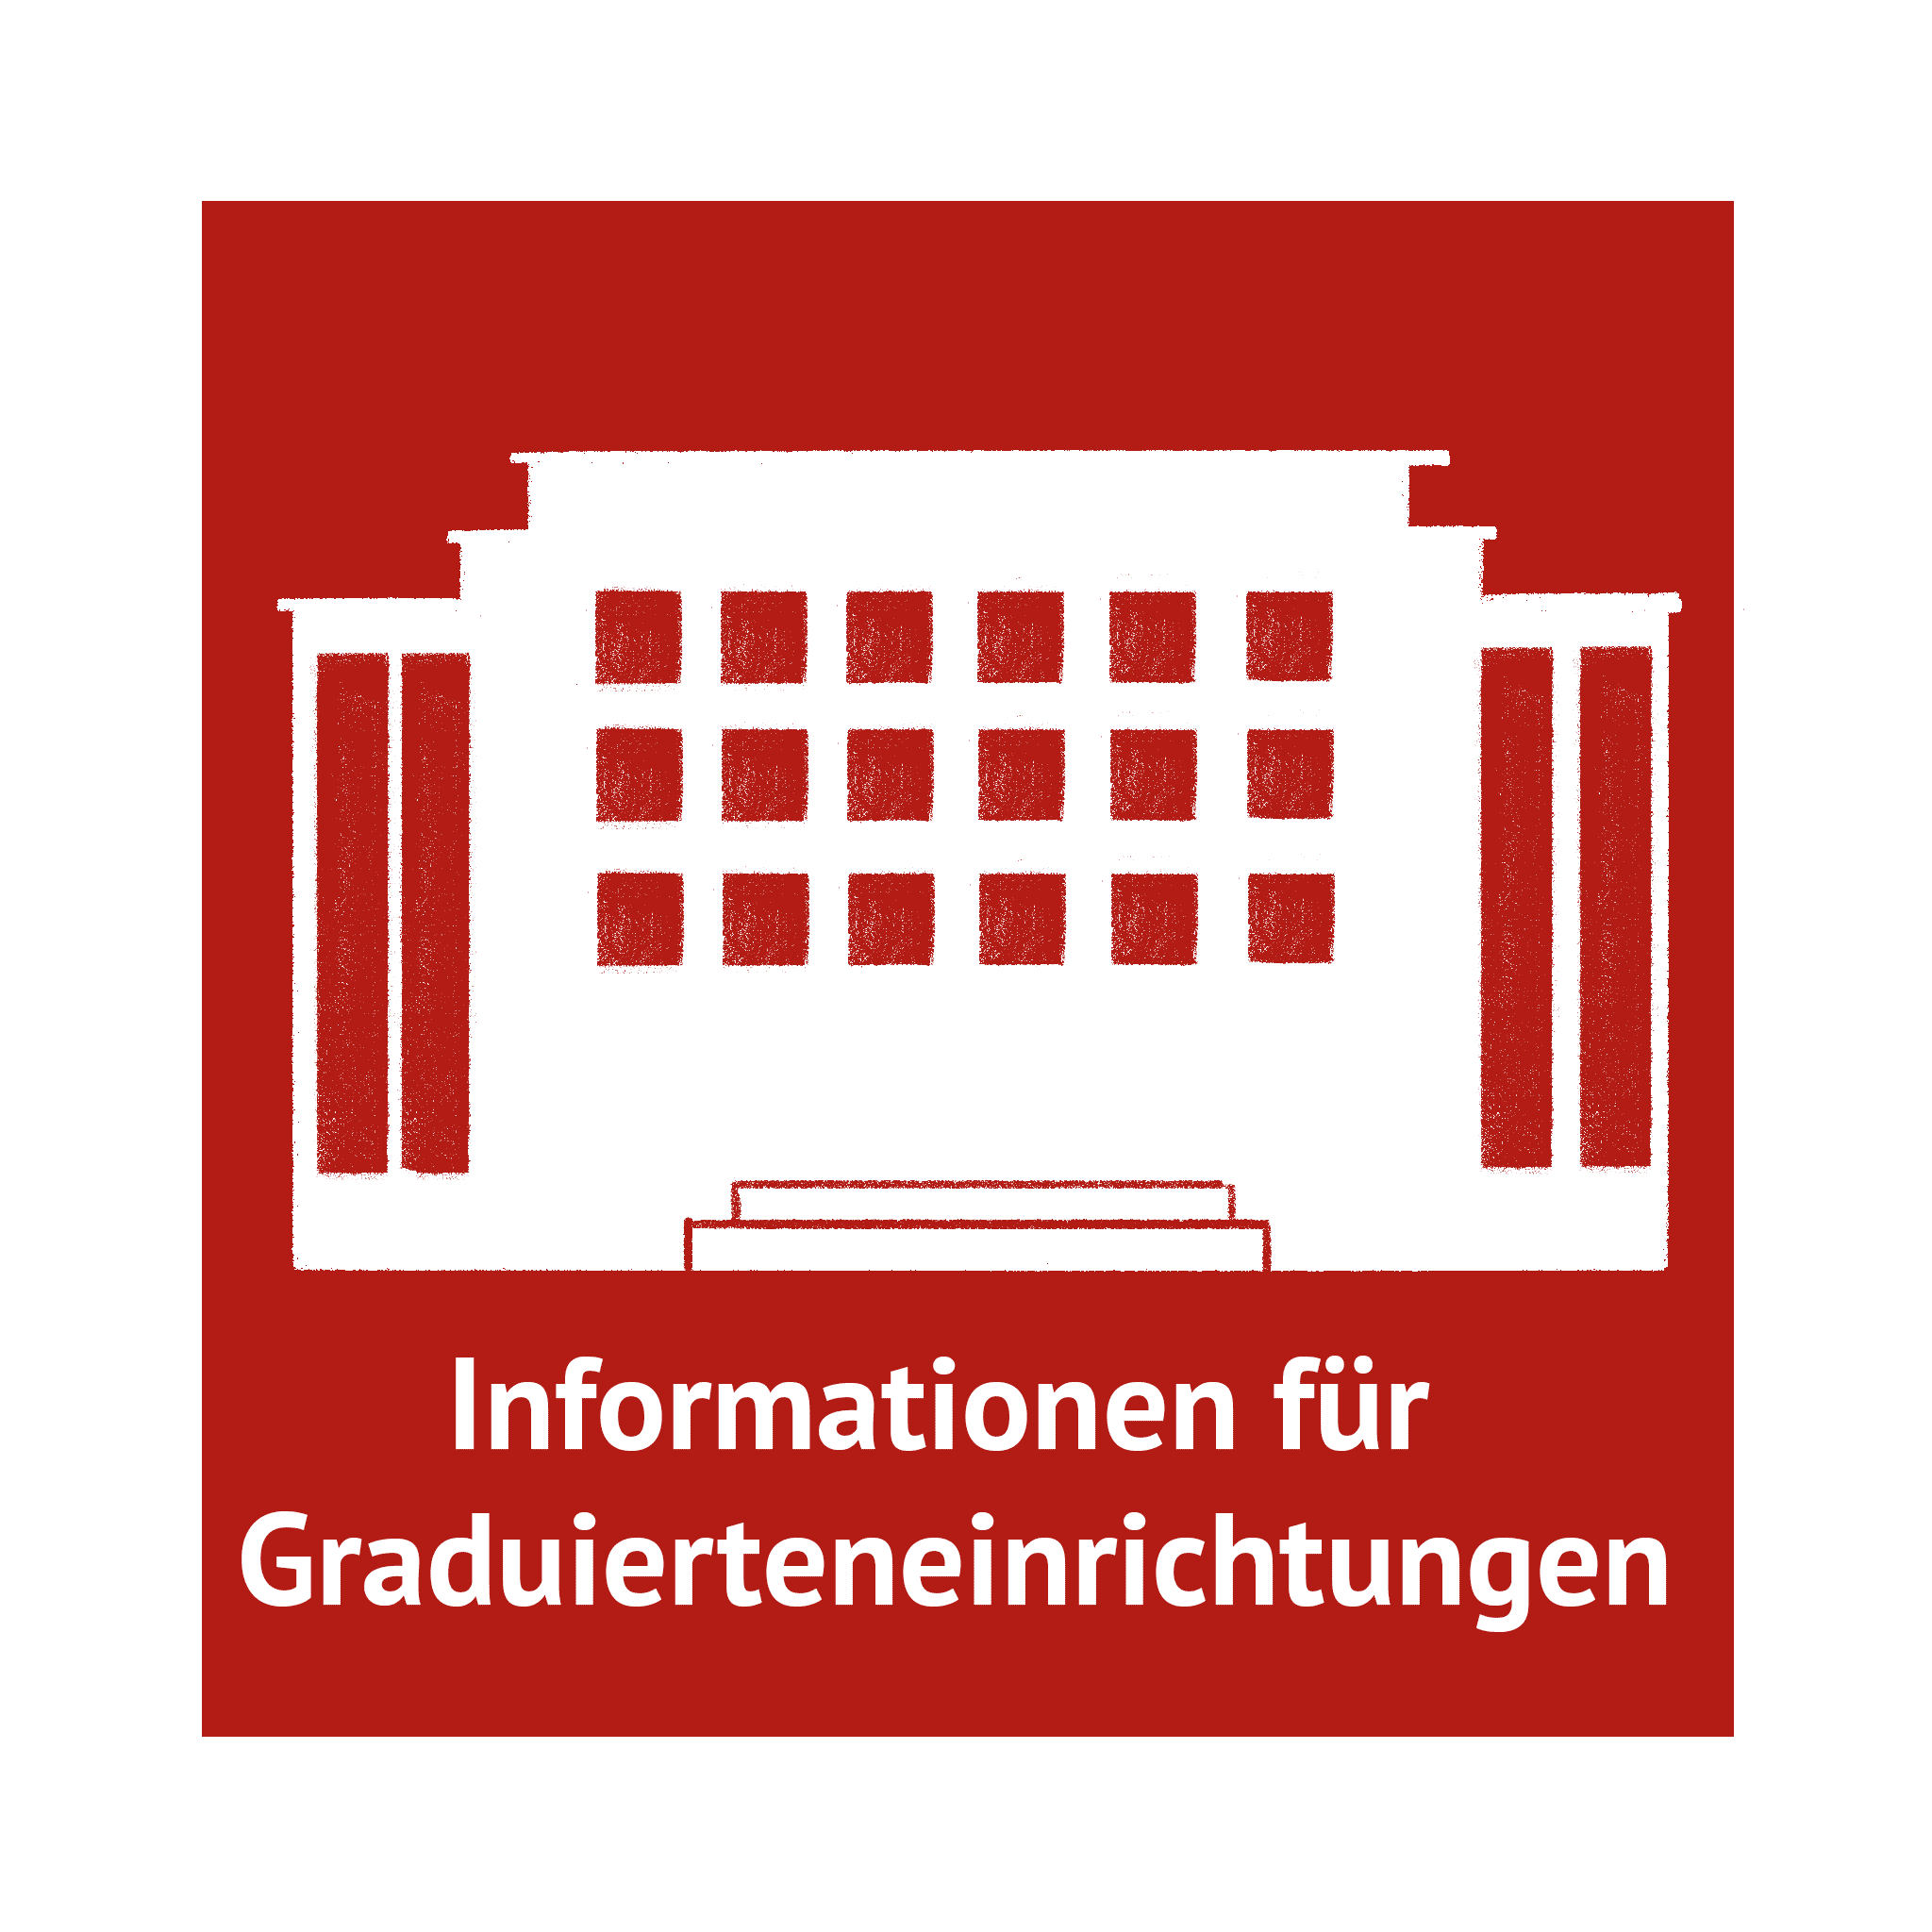 Informationen für Graduierteneinrichtungen - mehr erfahren